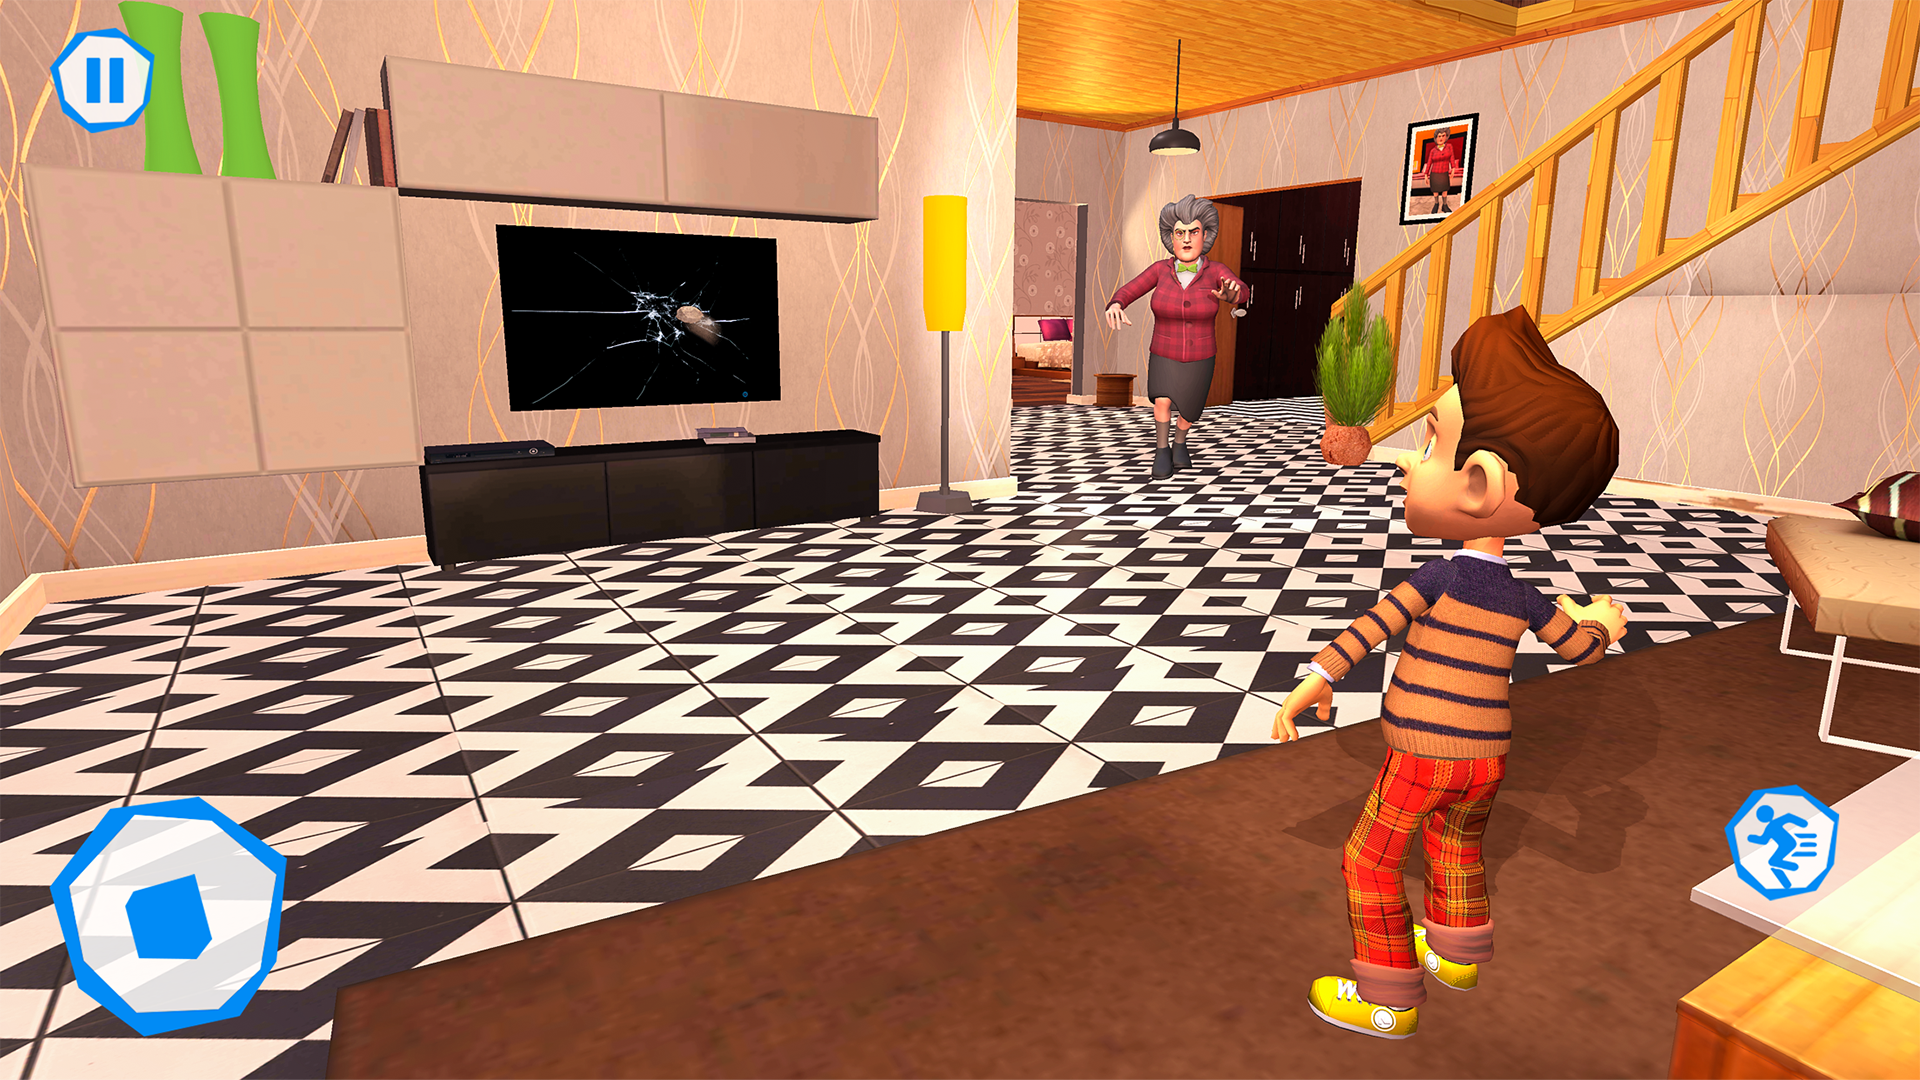 Scary Teacher Creepy Games: 3D Evil Teacher House - Microsoft Apps